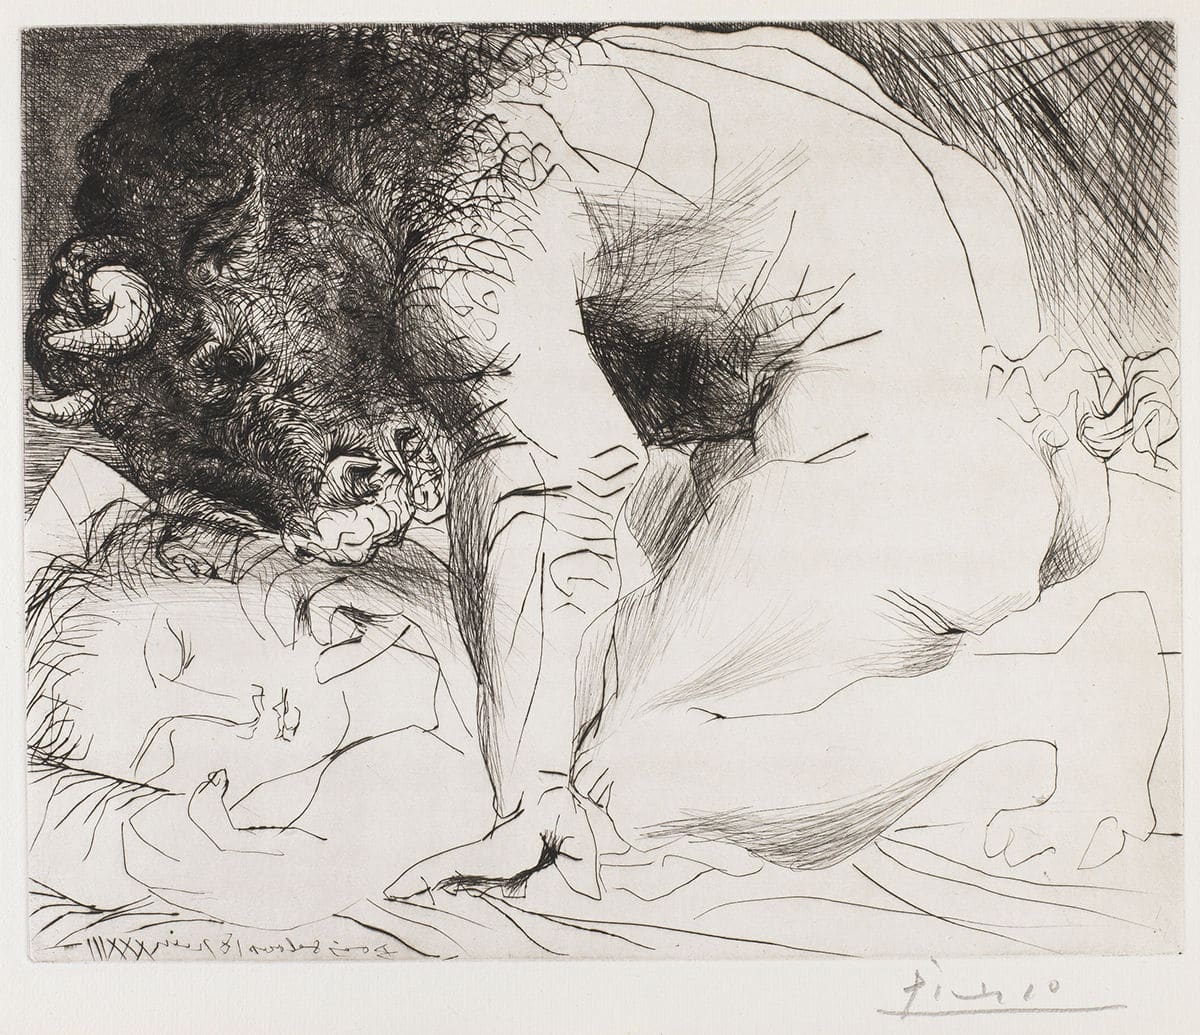 Minotauro acariciando a una mujer dormida © Pablo Picasso: Sucesión Pablo Picasso / VEGAP, Madrid © COLECCIONES Fundación MAPFRE